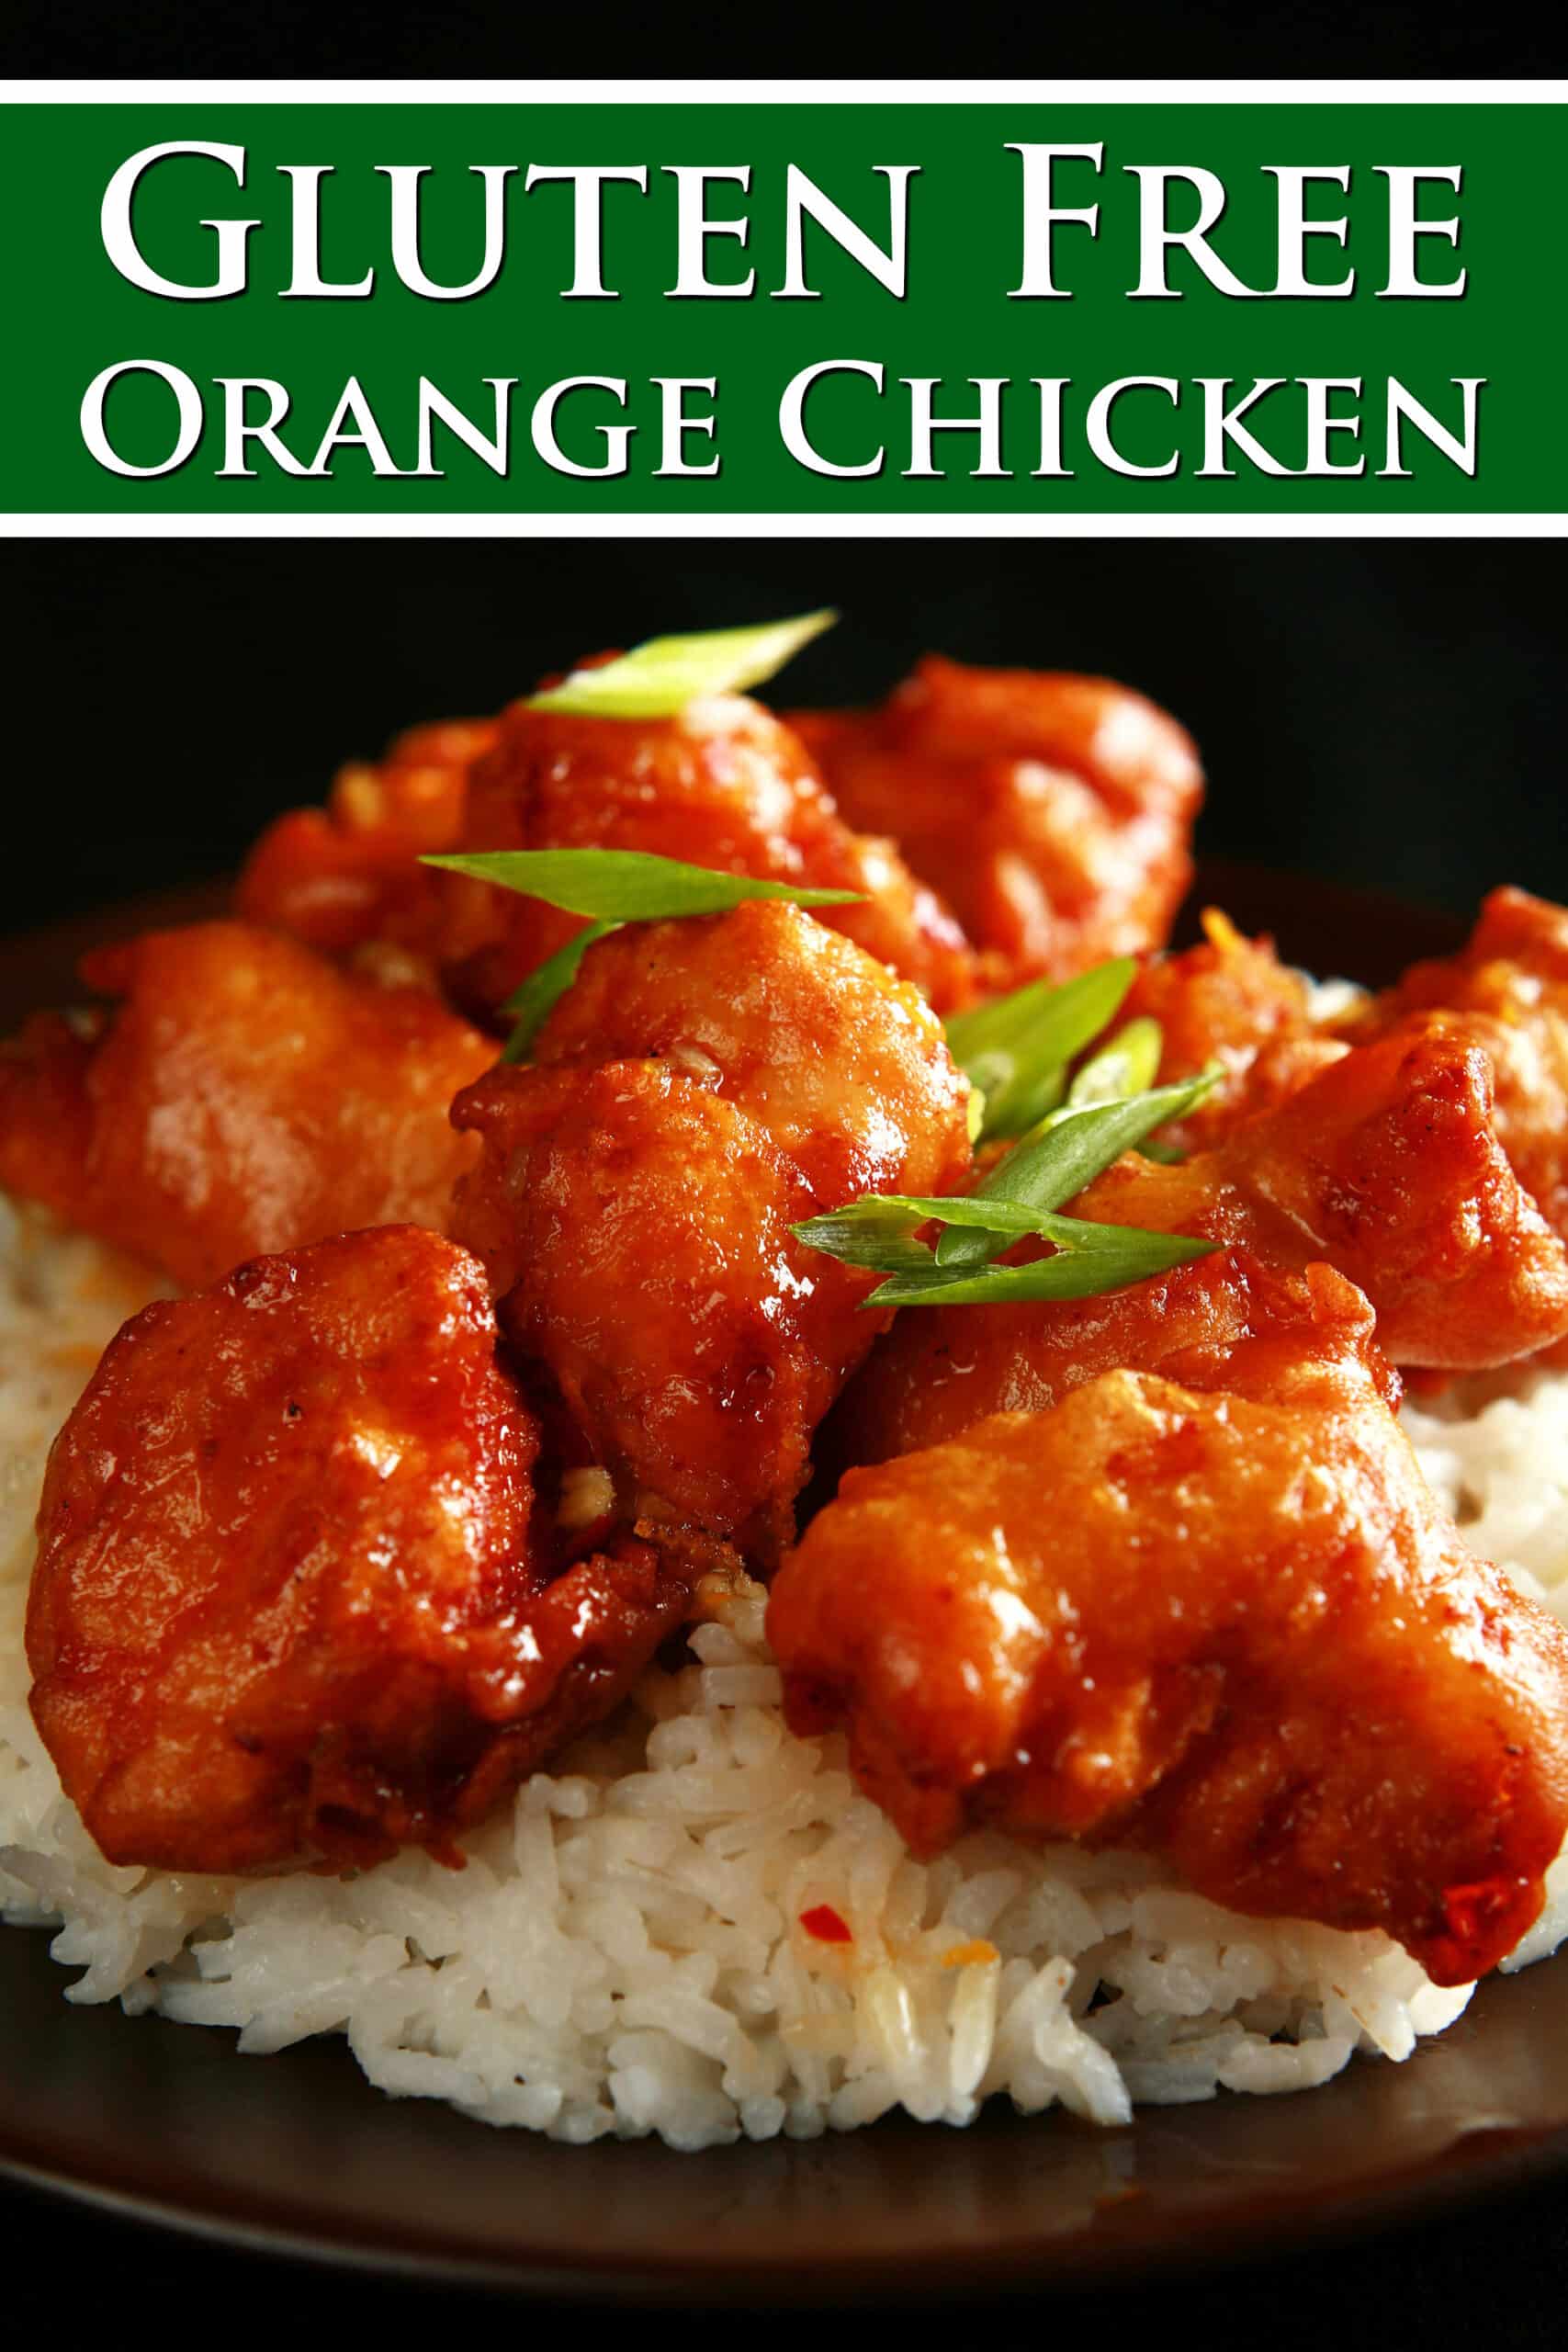 A big helping of gluten-free orange chicken served on rice. Overlaid text says gluten free orange chicken.